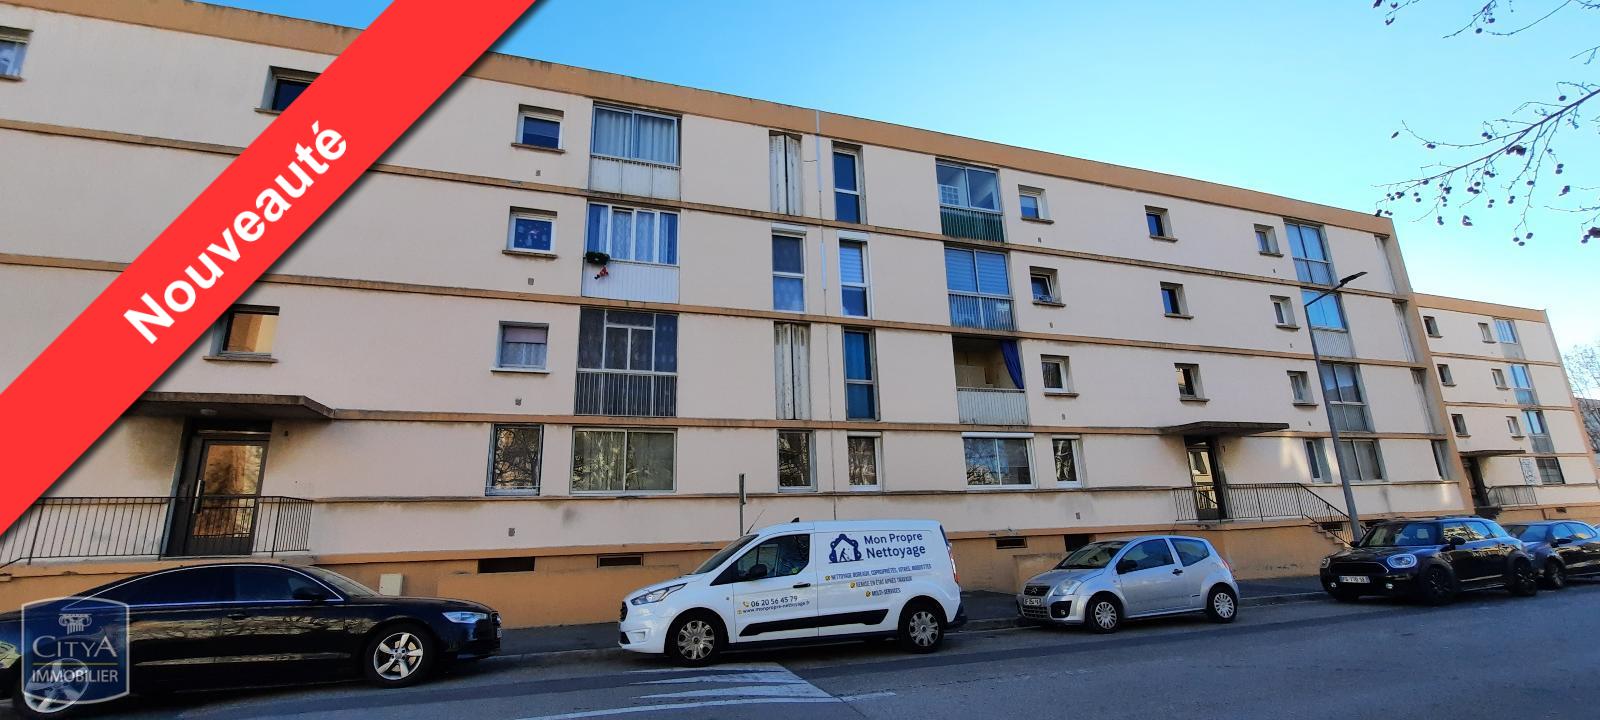 Vente Appartement 69m² 4 Pièces à Marignane (13700) - Citya